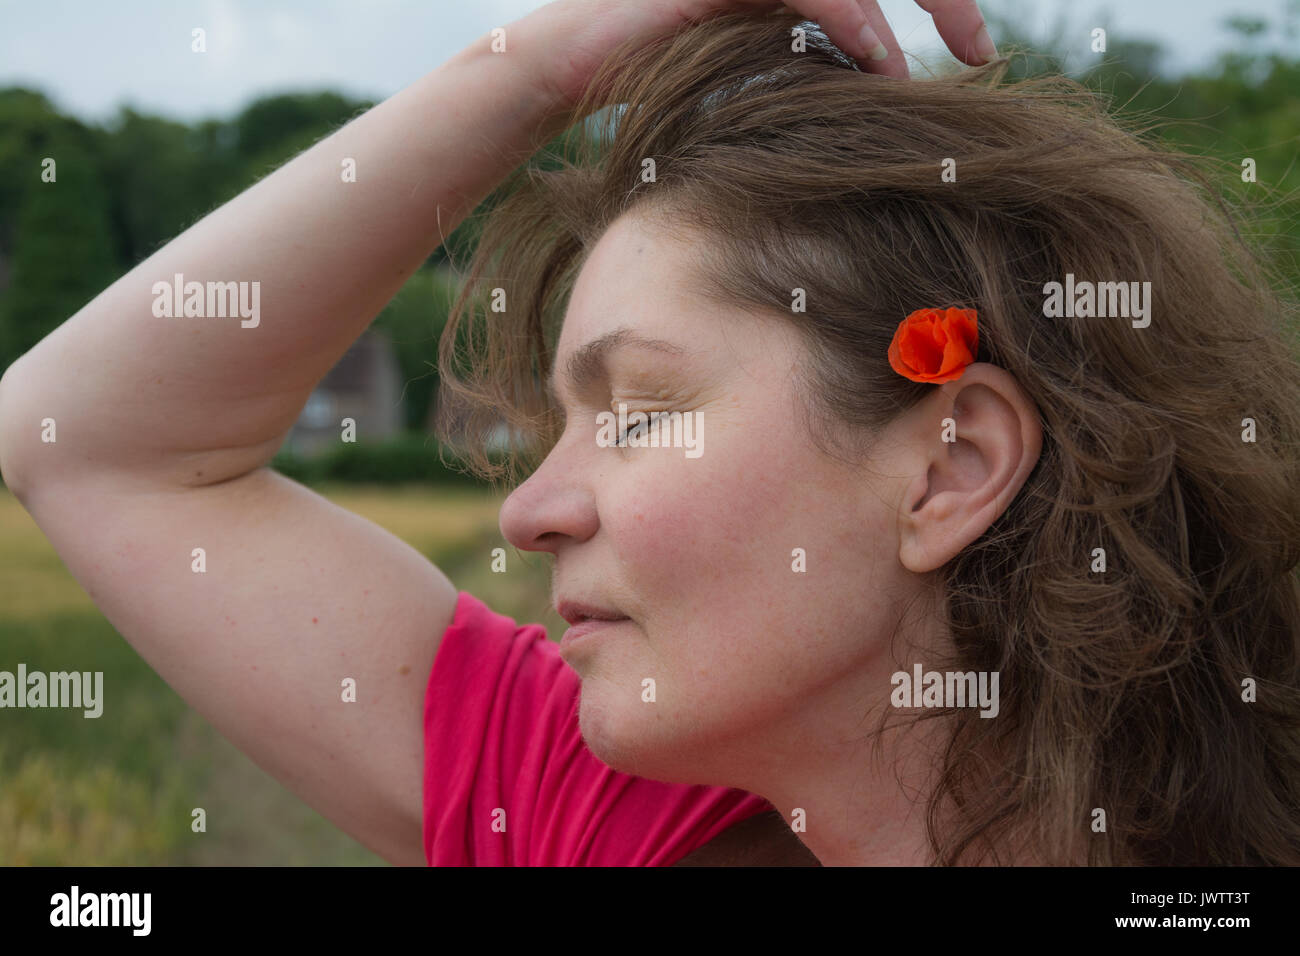 Eine Frau in einer rosa Top ihr Haar nach hinten gezogen, ein wildes Feld Mohn zu offenbaren, versteckt hinter Ihr Ohr an einem Sommertag. Großbritannien Stockfoto